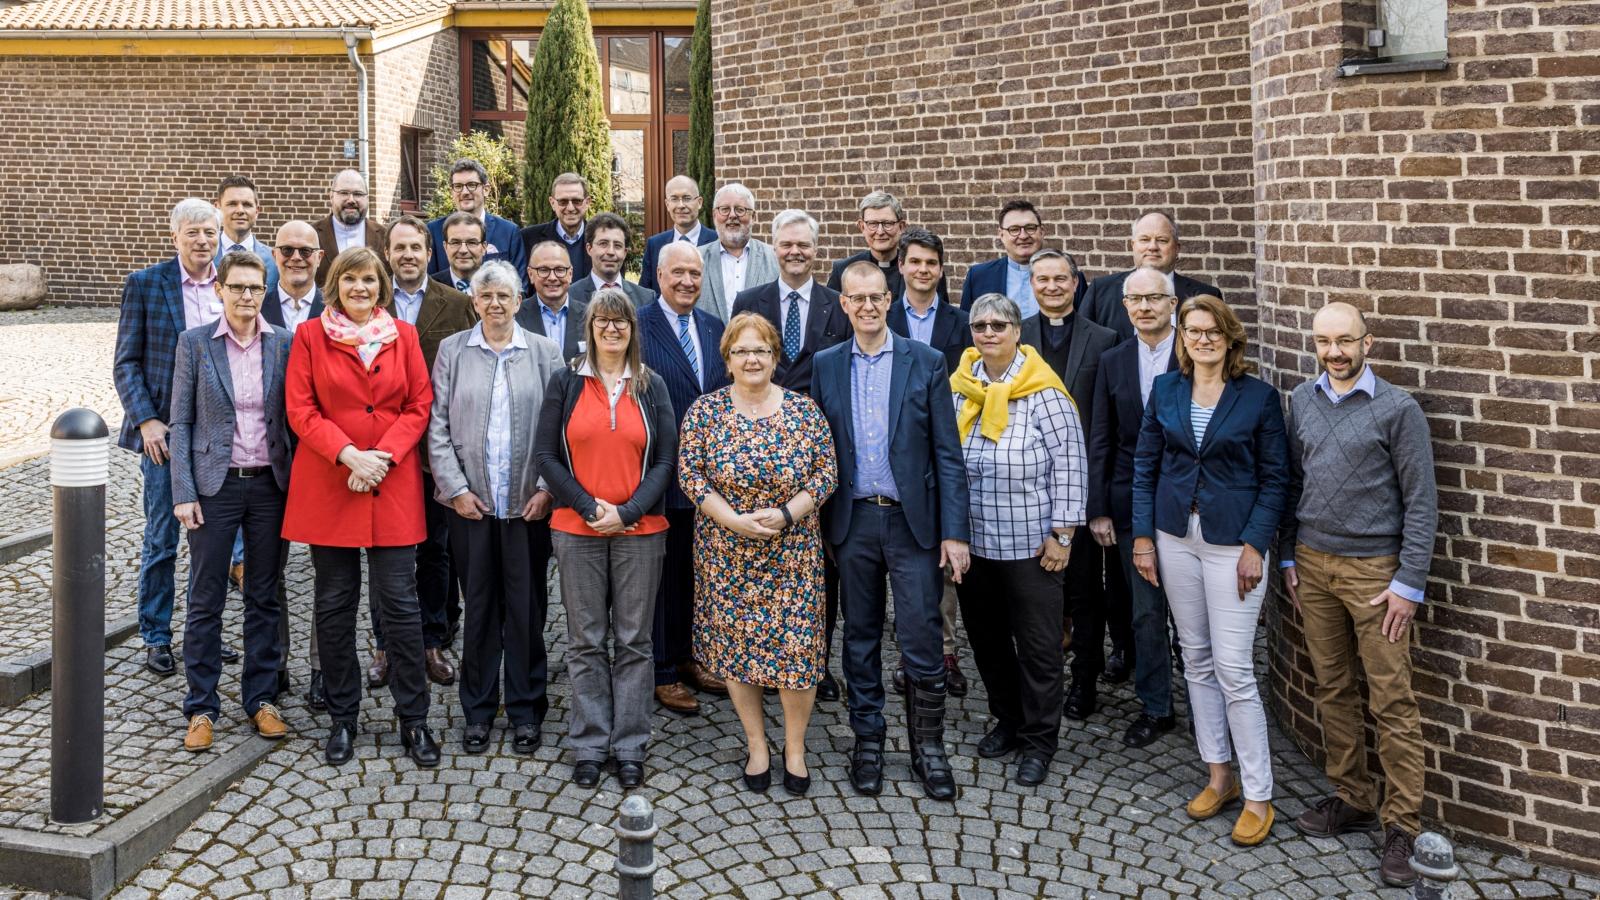 Mitglieder des neu gewählten Kirchensteuer- und Wirtschaftrates (KiWi) am Rande der konstituierenden Sitzung im Maternushaus Köln am 26.03.2022